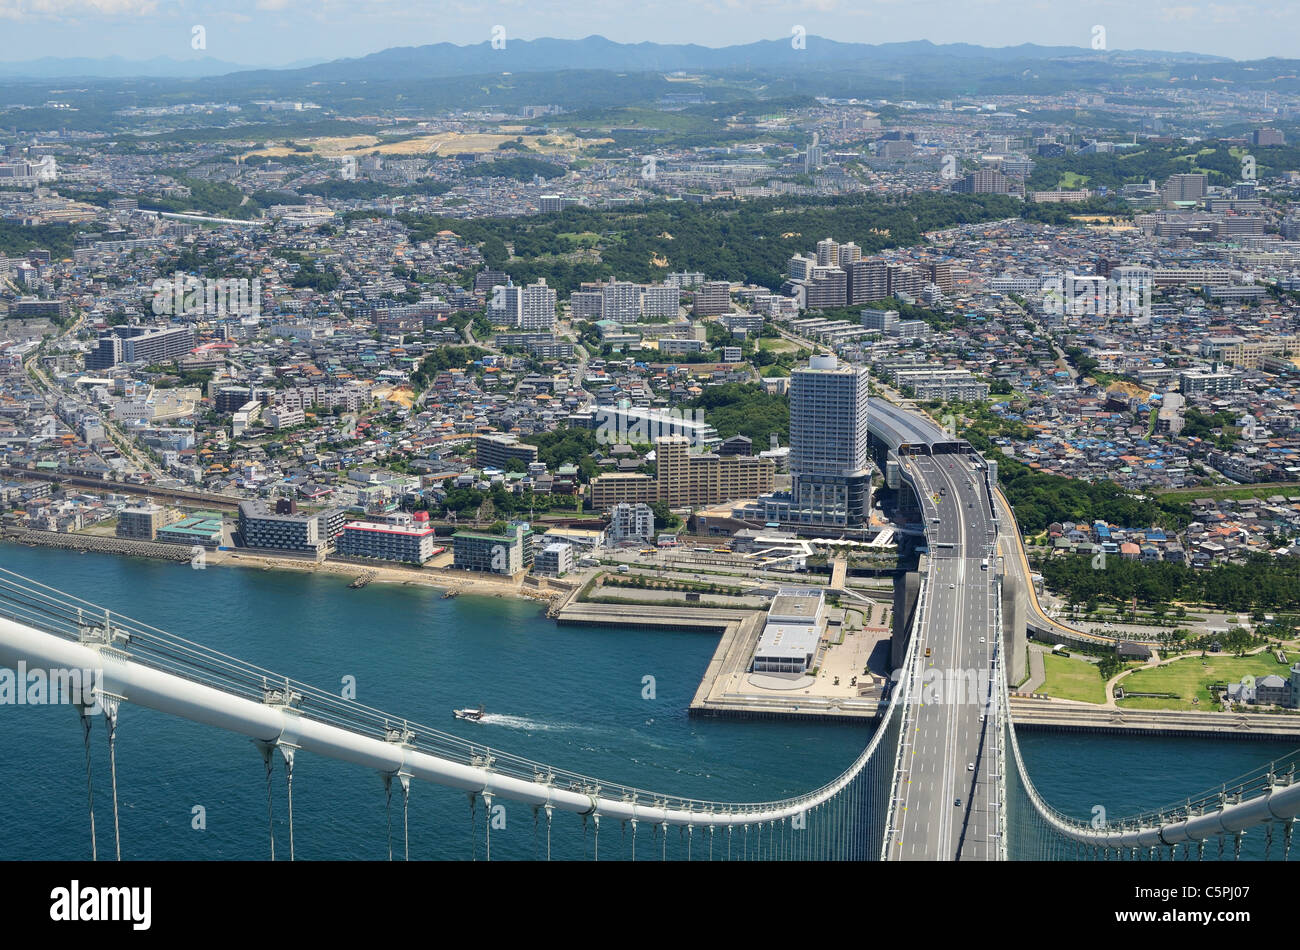 Akashi Kaikyo Bridge à Kobe, Japon, vu de près de 300 mètres de haut. Banque D'Images